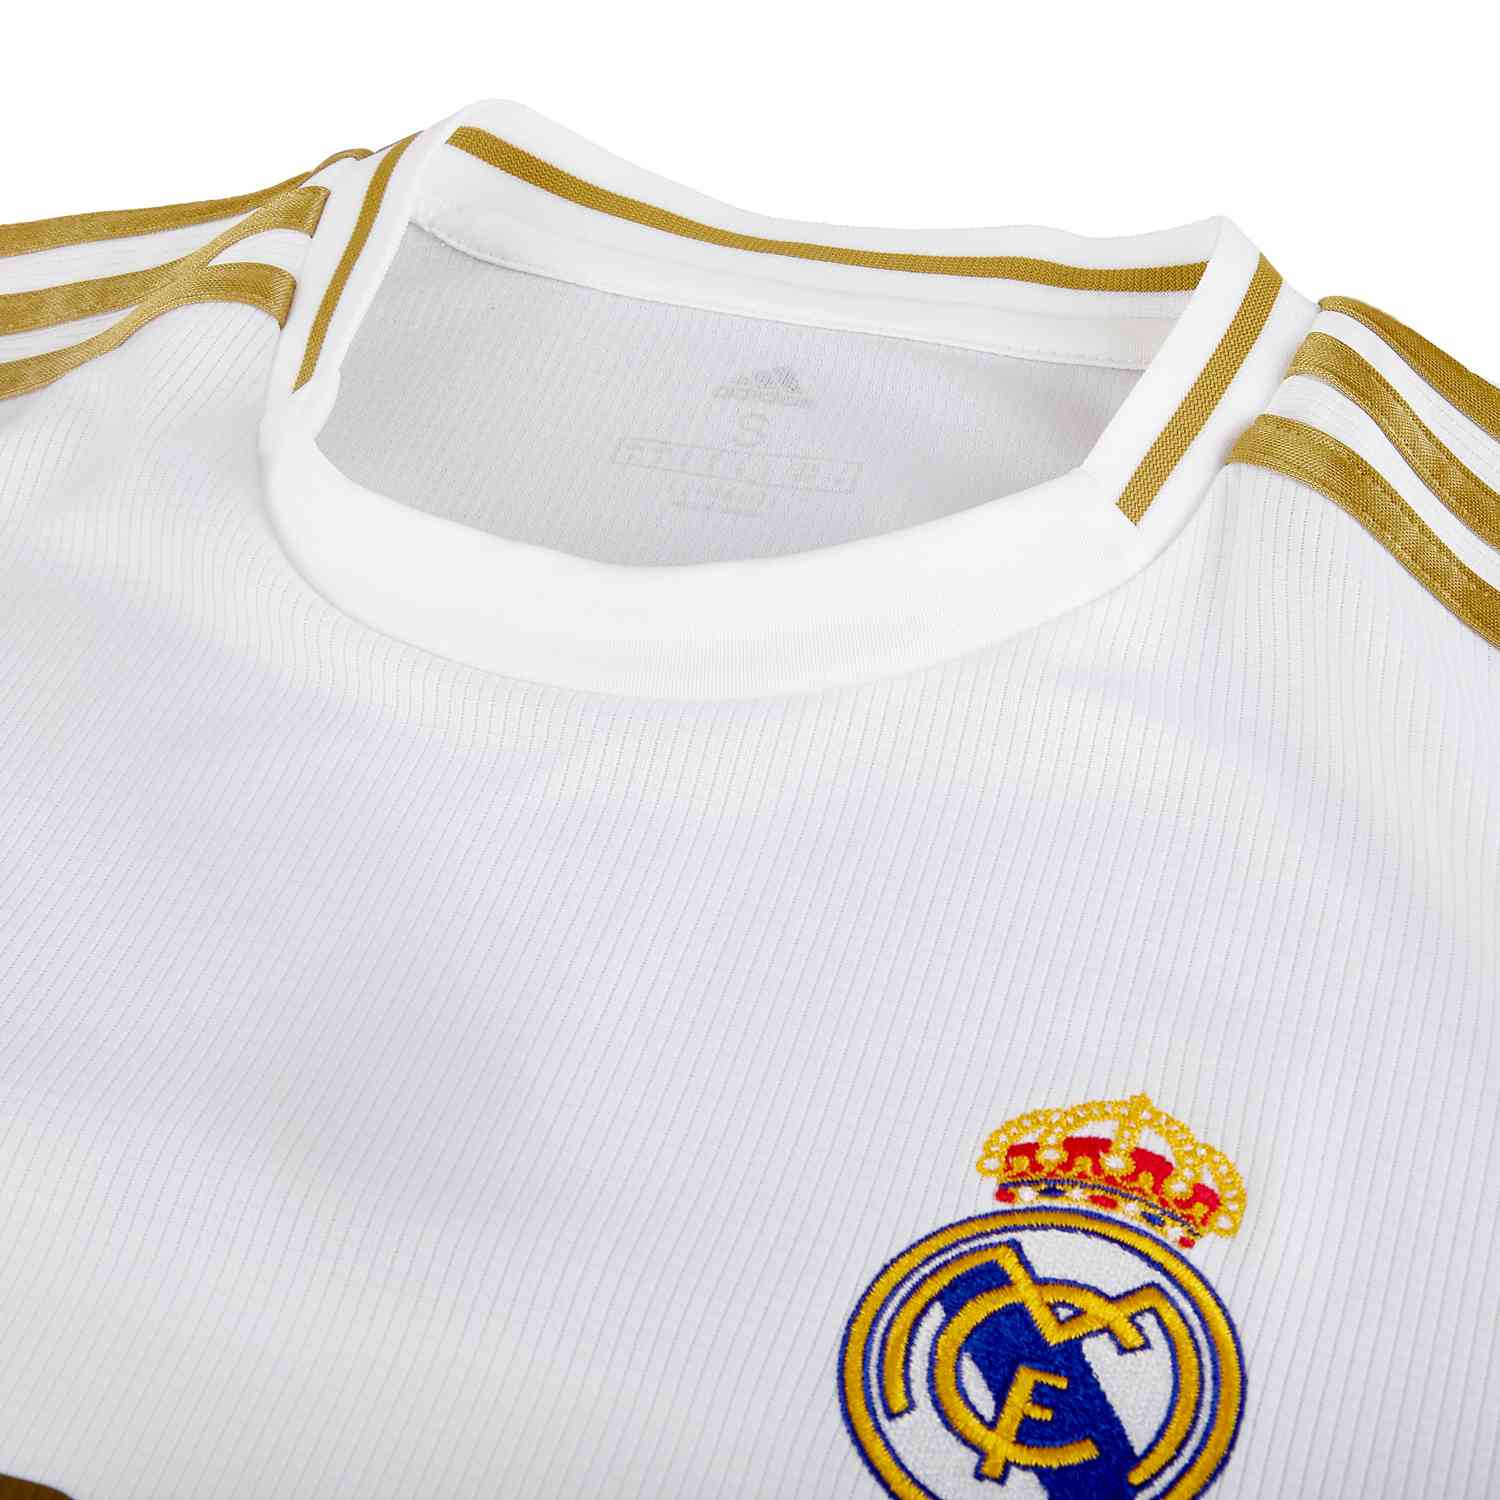 inoxidable Decrépito Cuando 2019/20 adidas Gareth Bale Real Madrid Home Jersey - SoccerPro